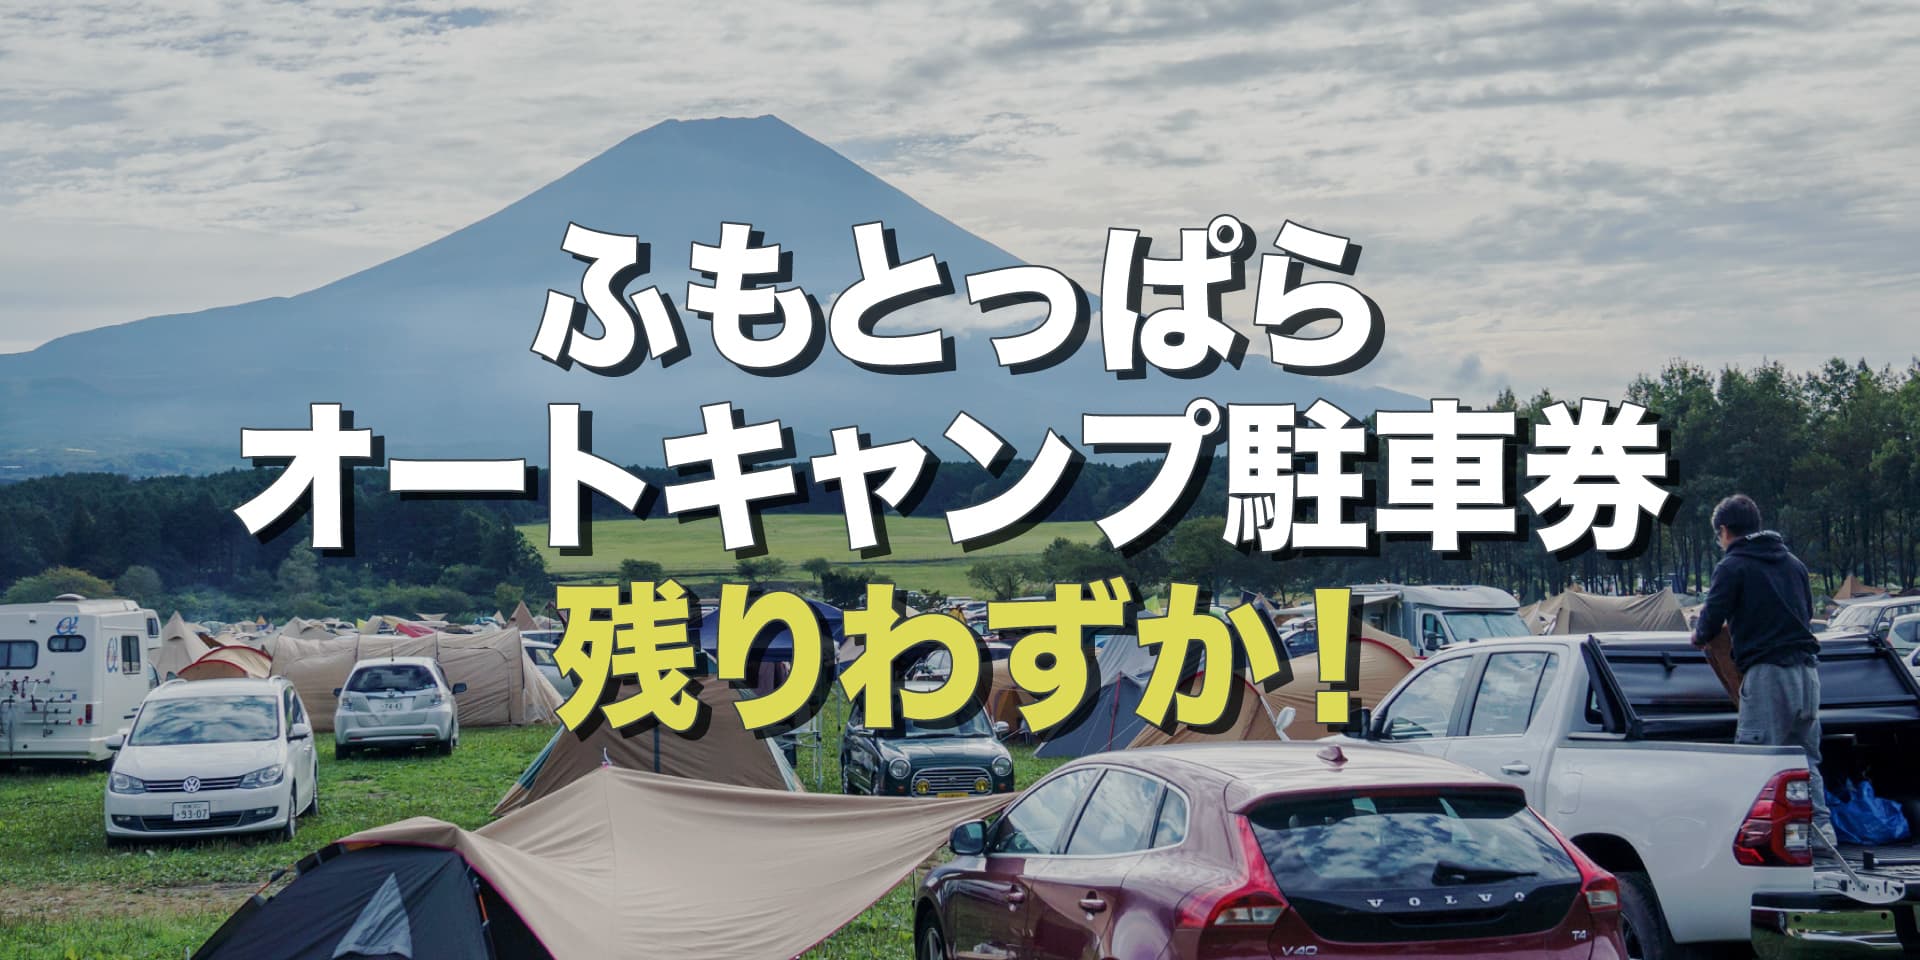 朝霧JAM チケット ふもとっぱらオートキャンプ駐車券 - 音楽フェス